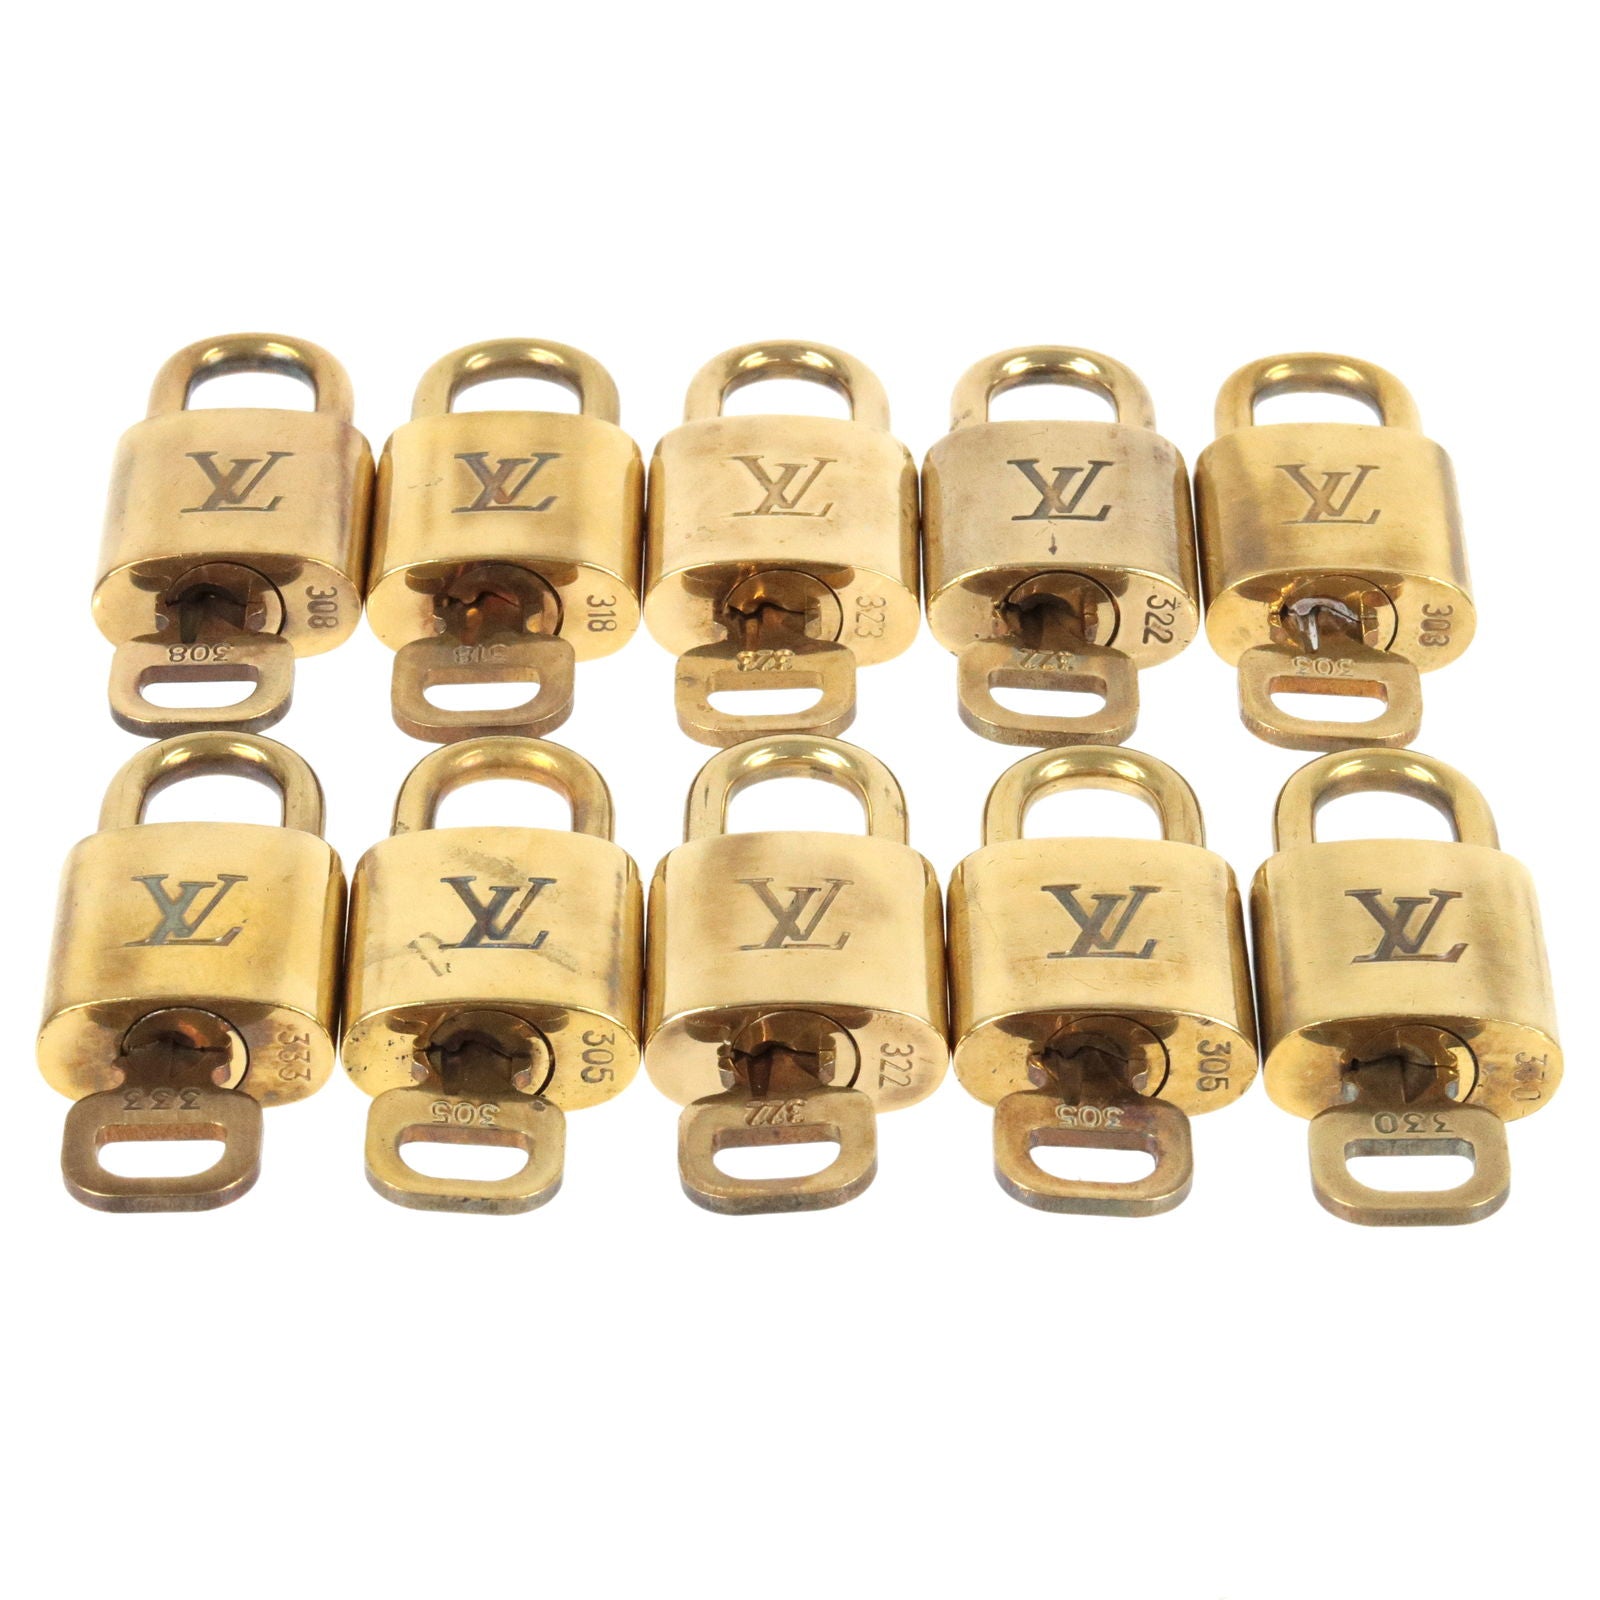  Louis Vuitton Cadena Padlock with Keys, Set of 20